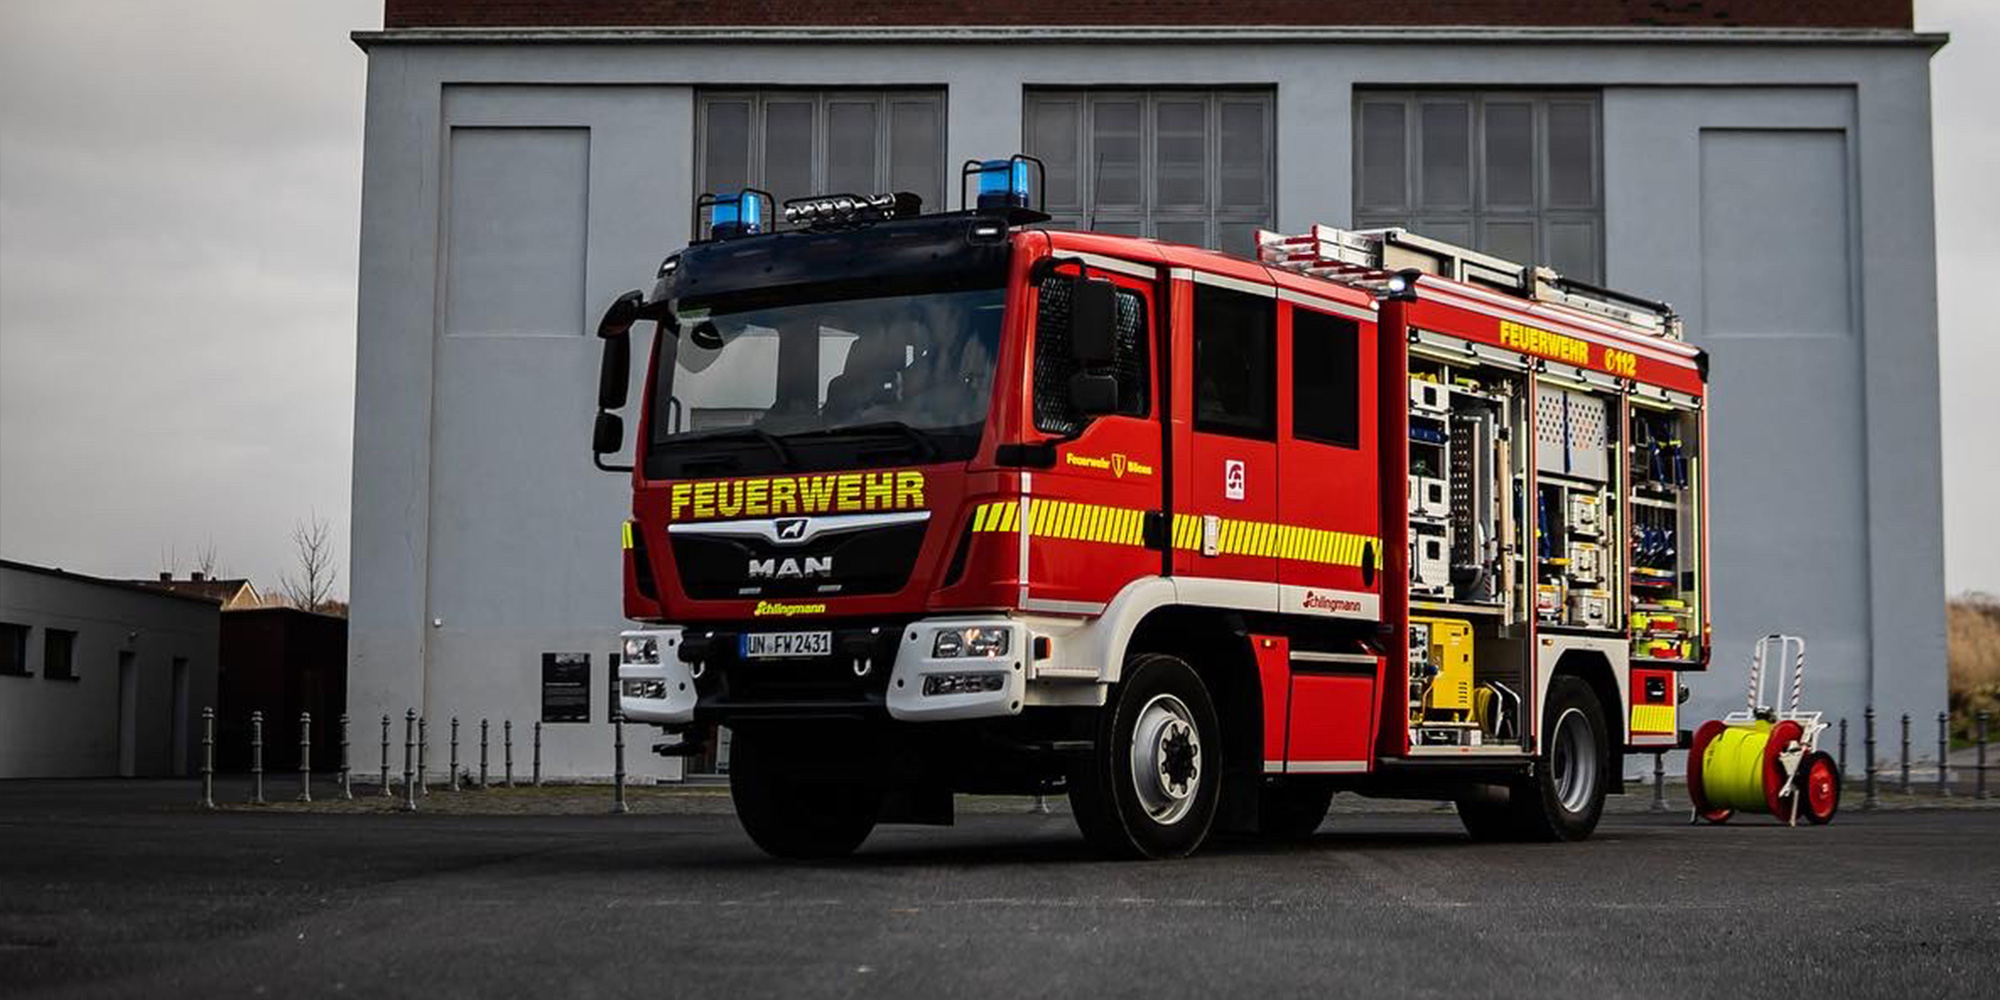 (c) Feuerwehr-boenen.de